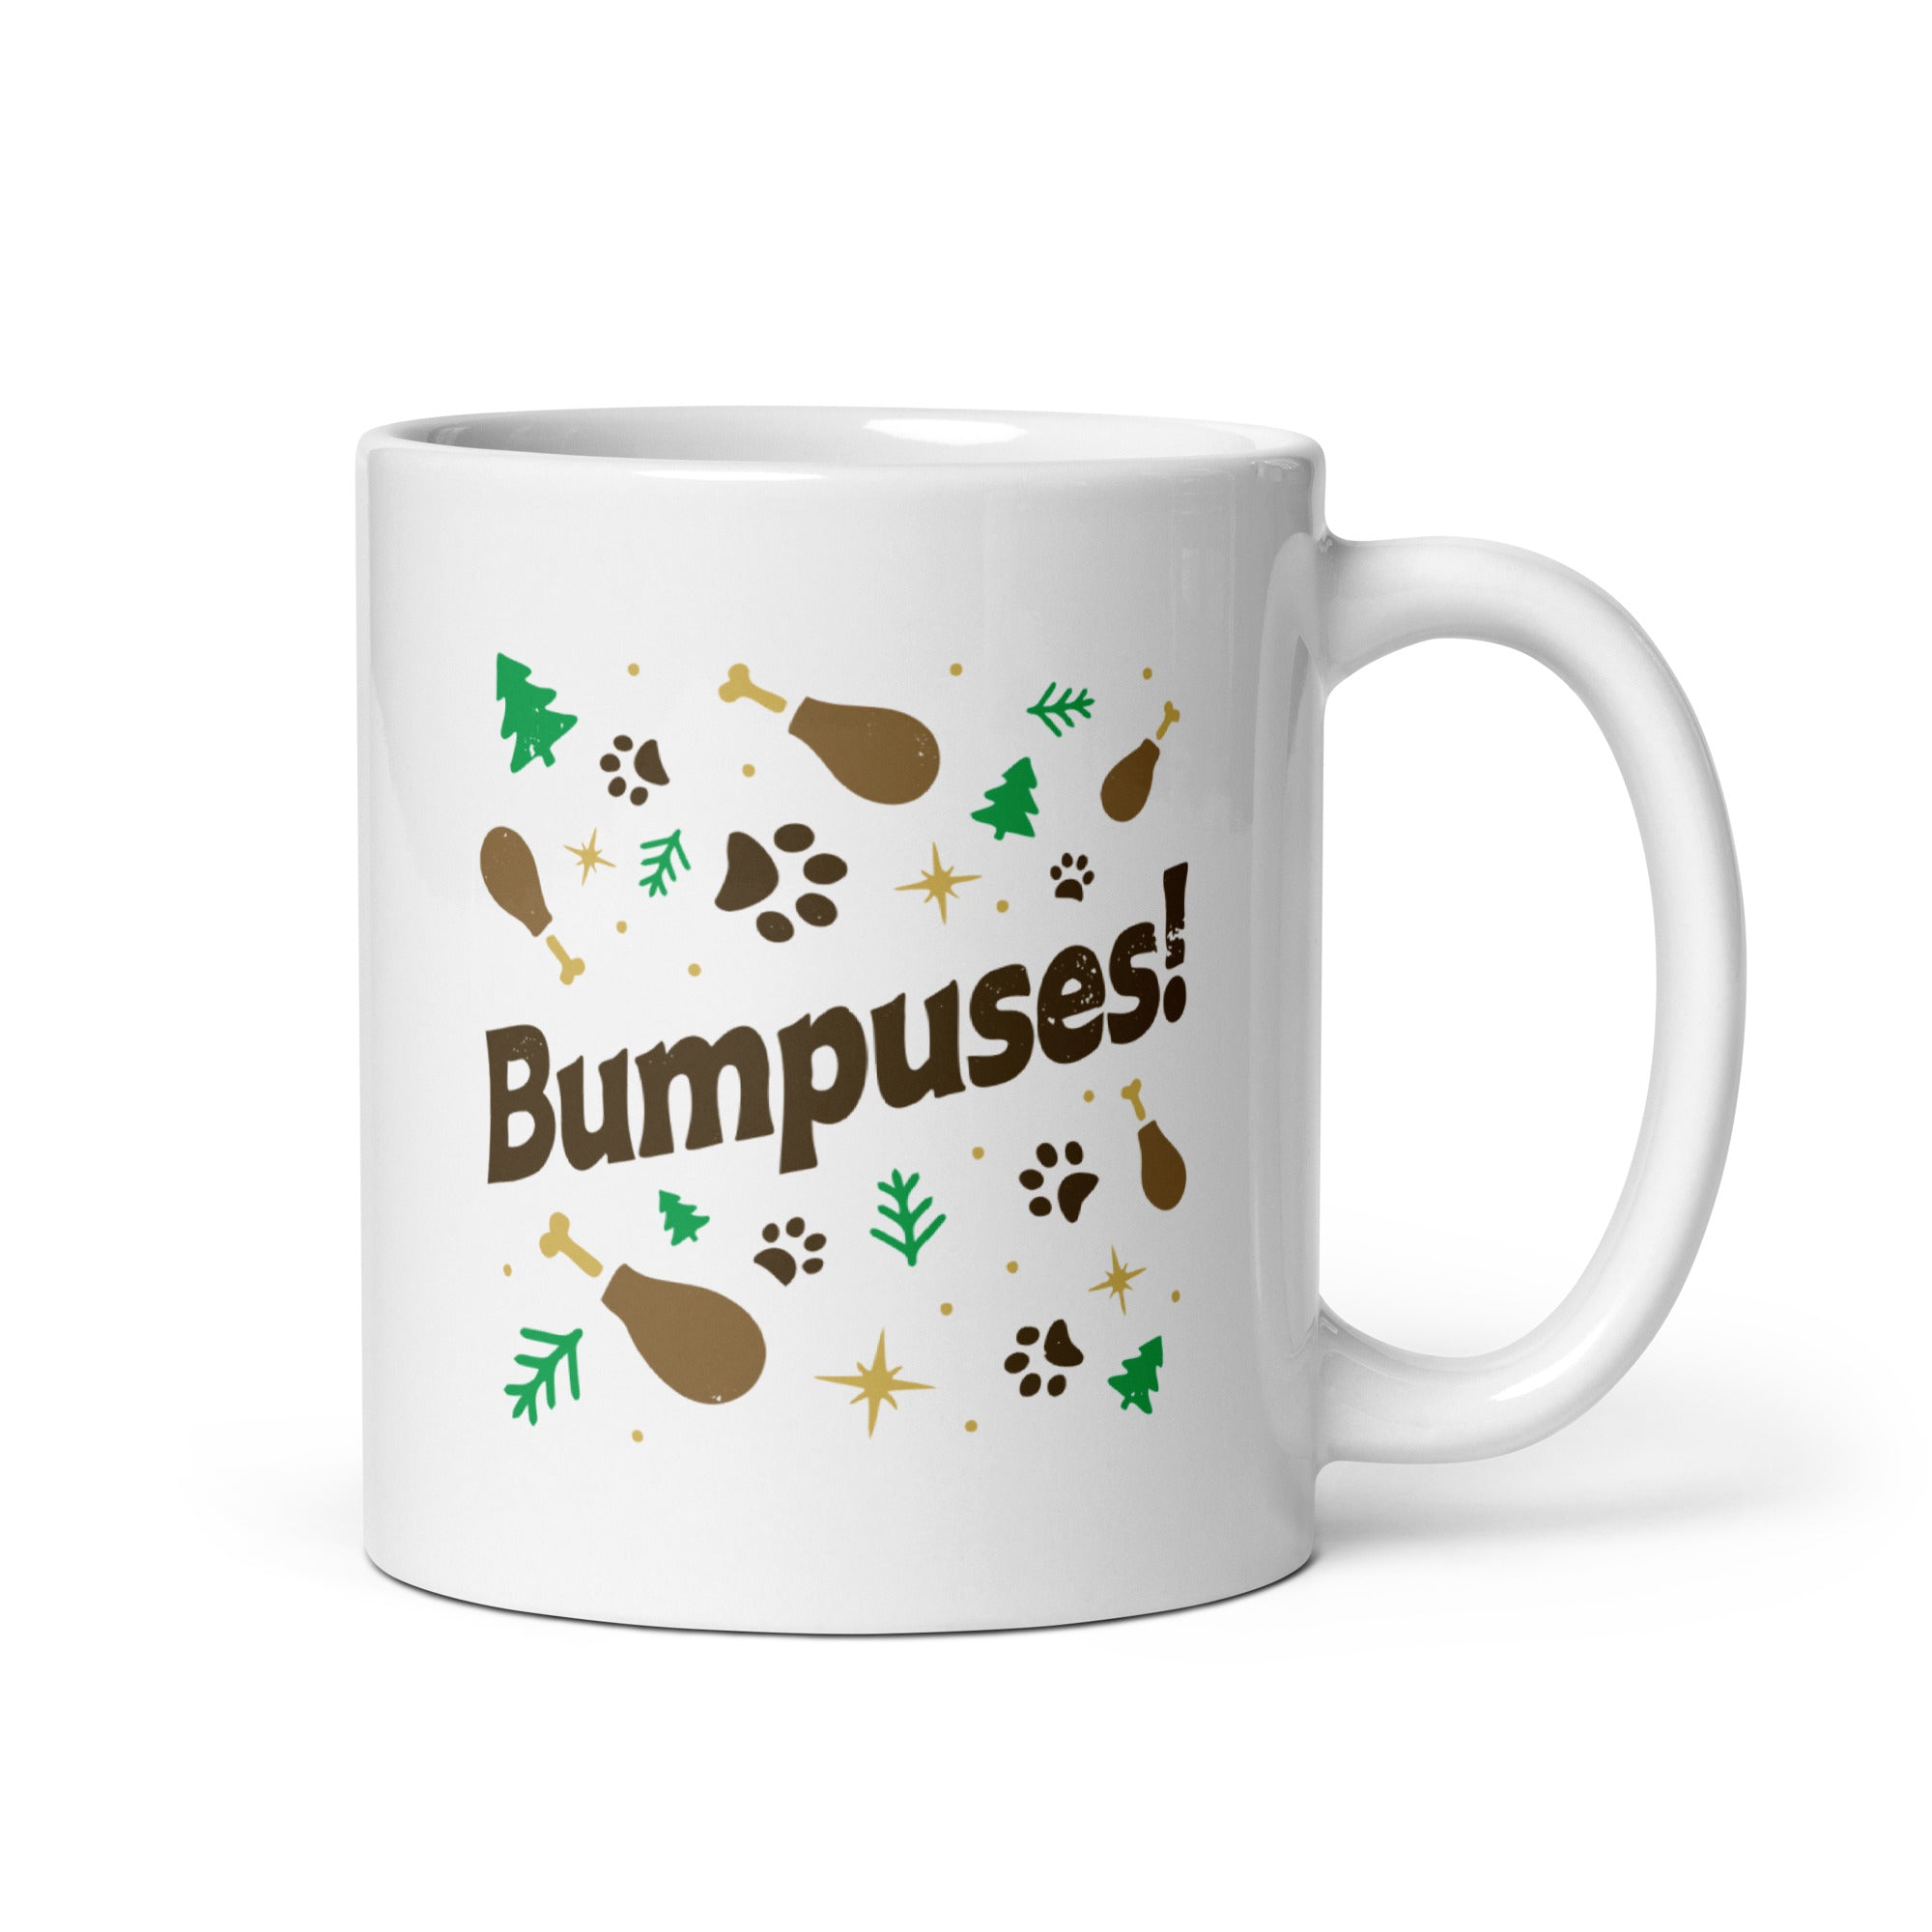 Bumpuses! - 11oz Coffee Mug